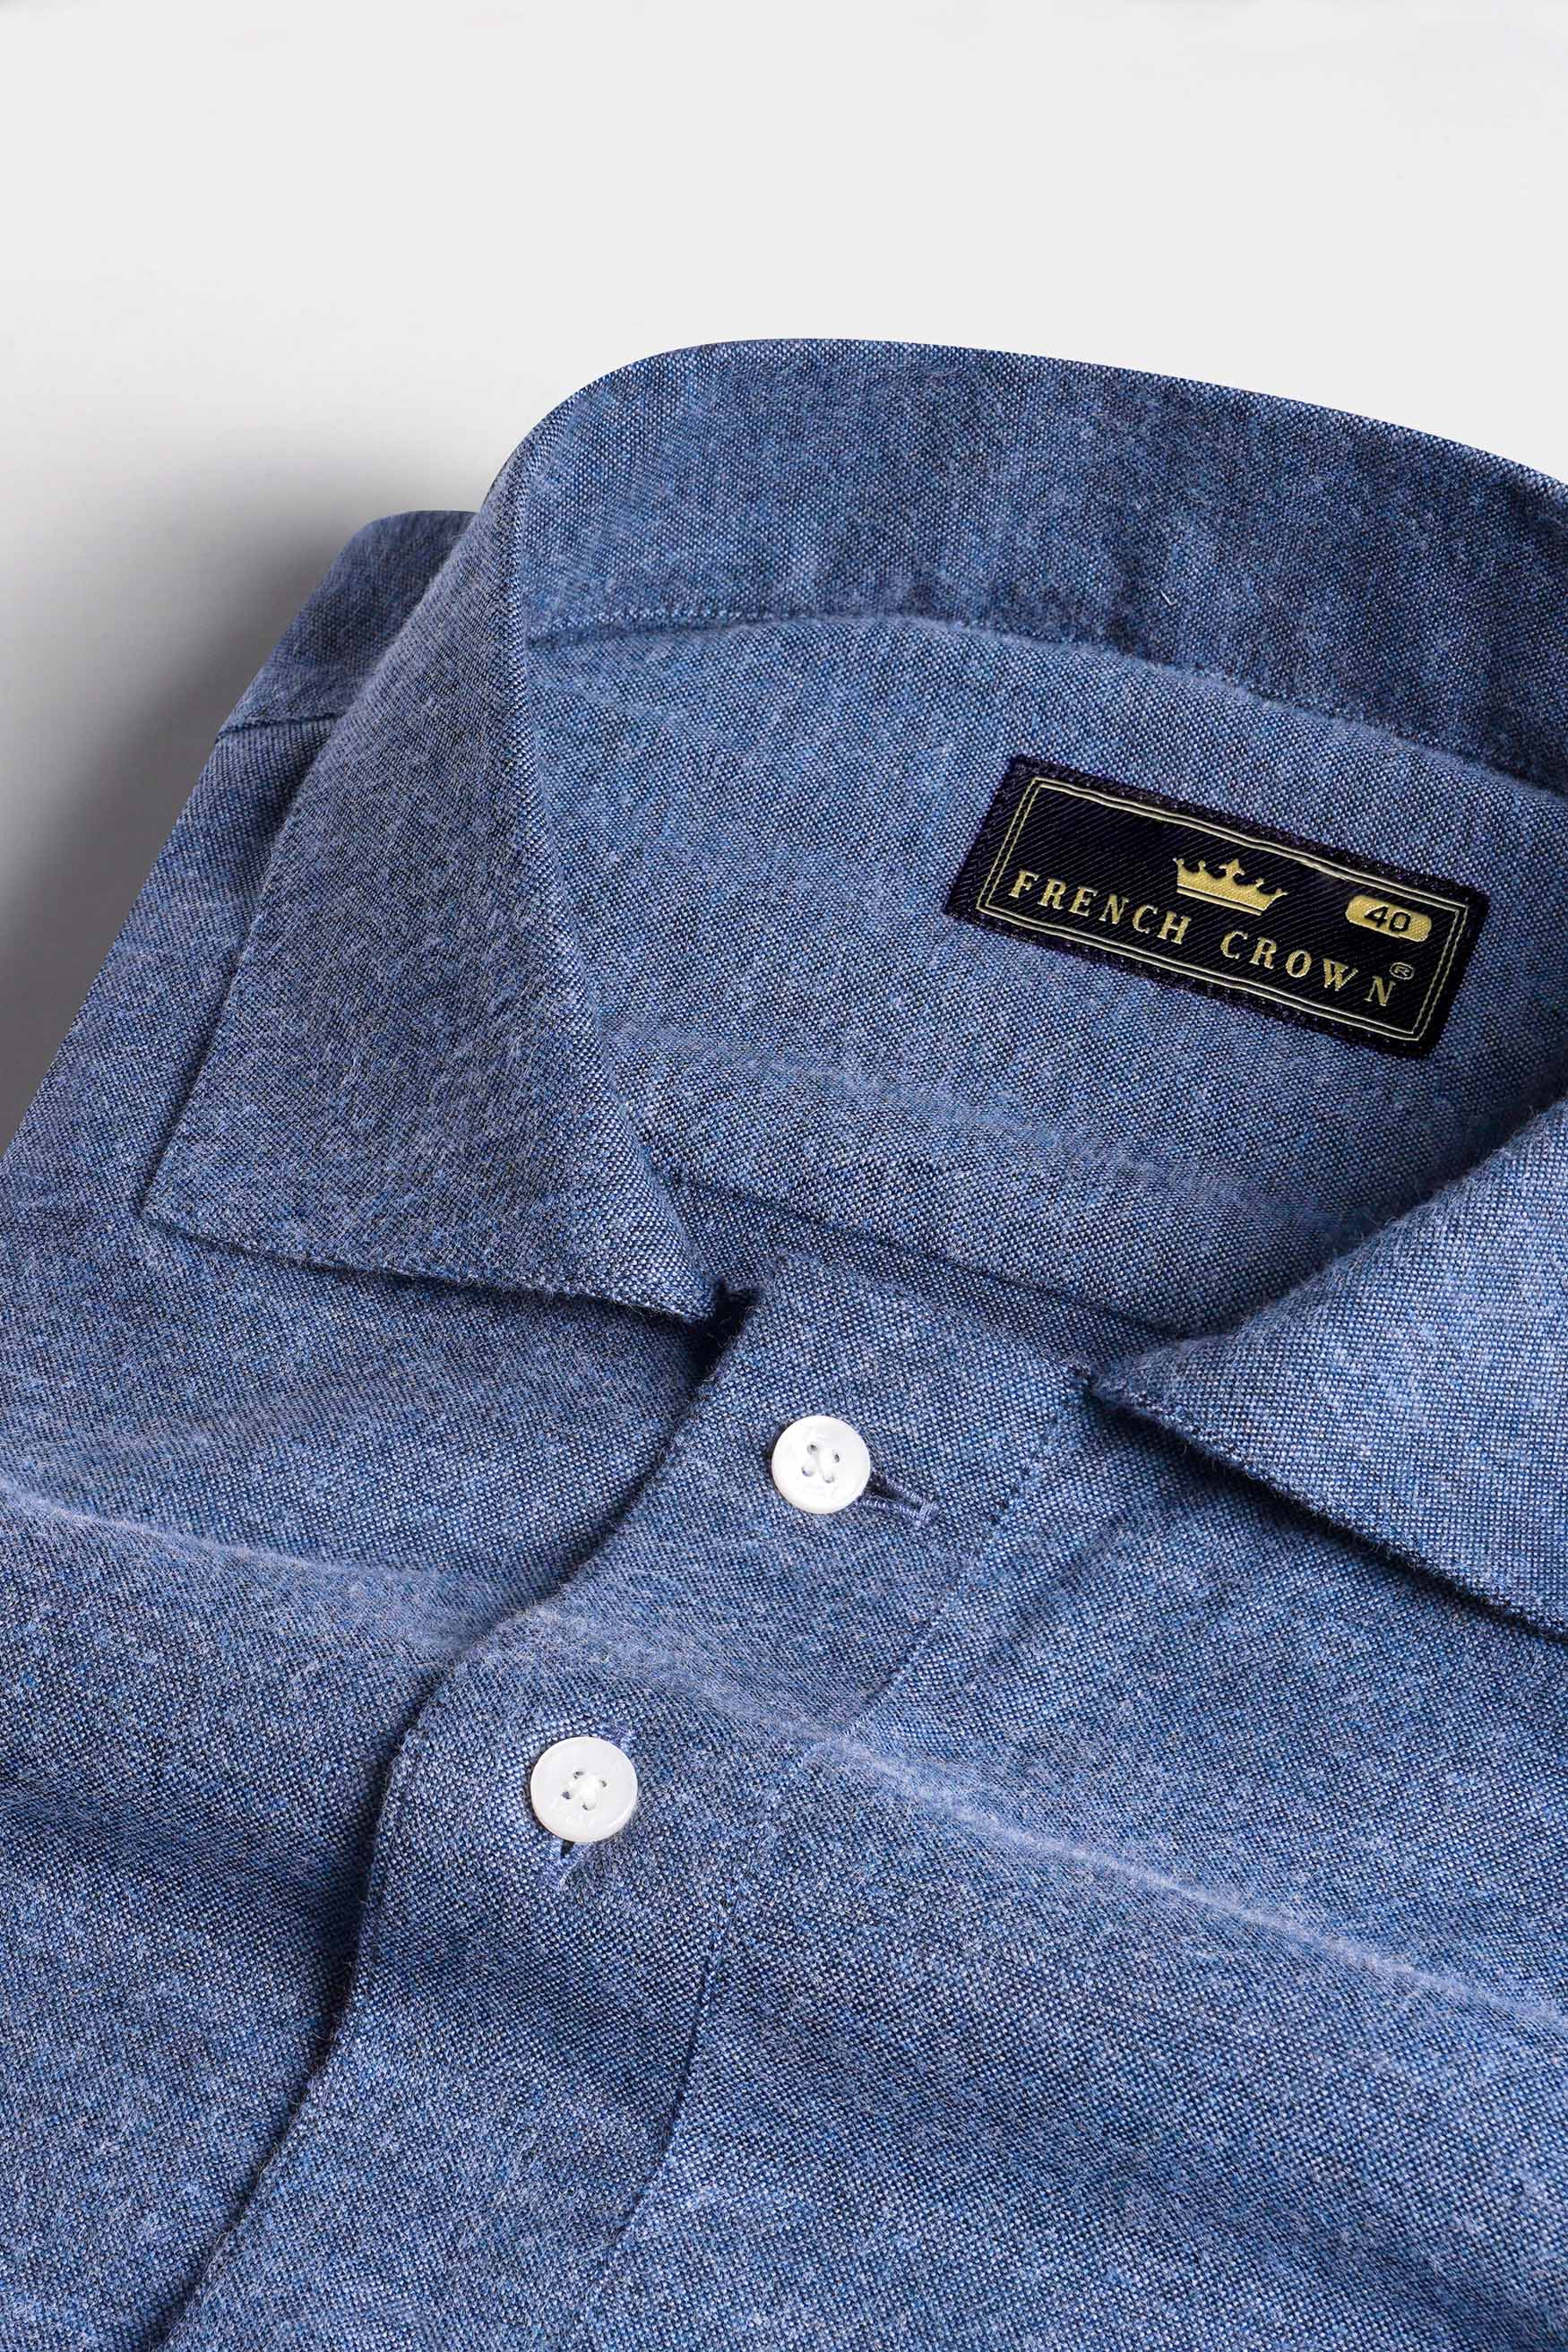 Comet Blue Flannel Designer Shirt